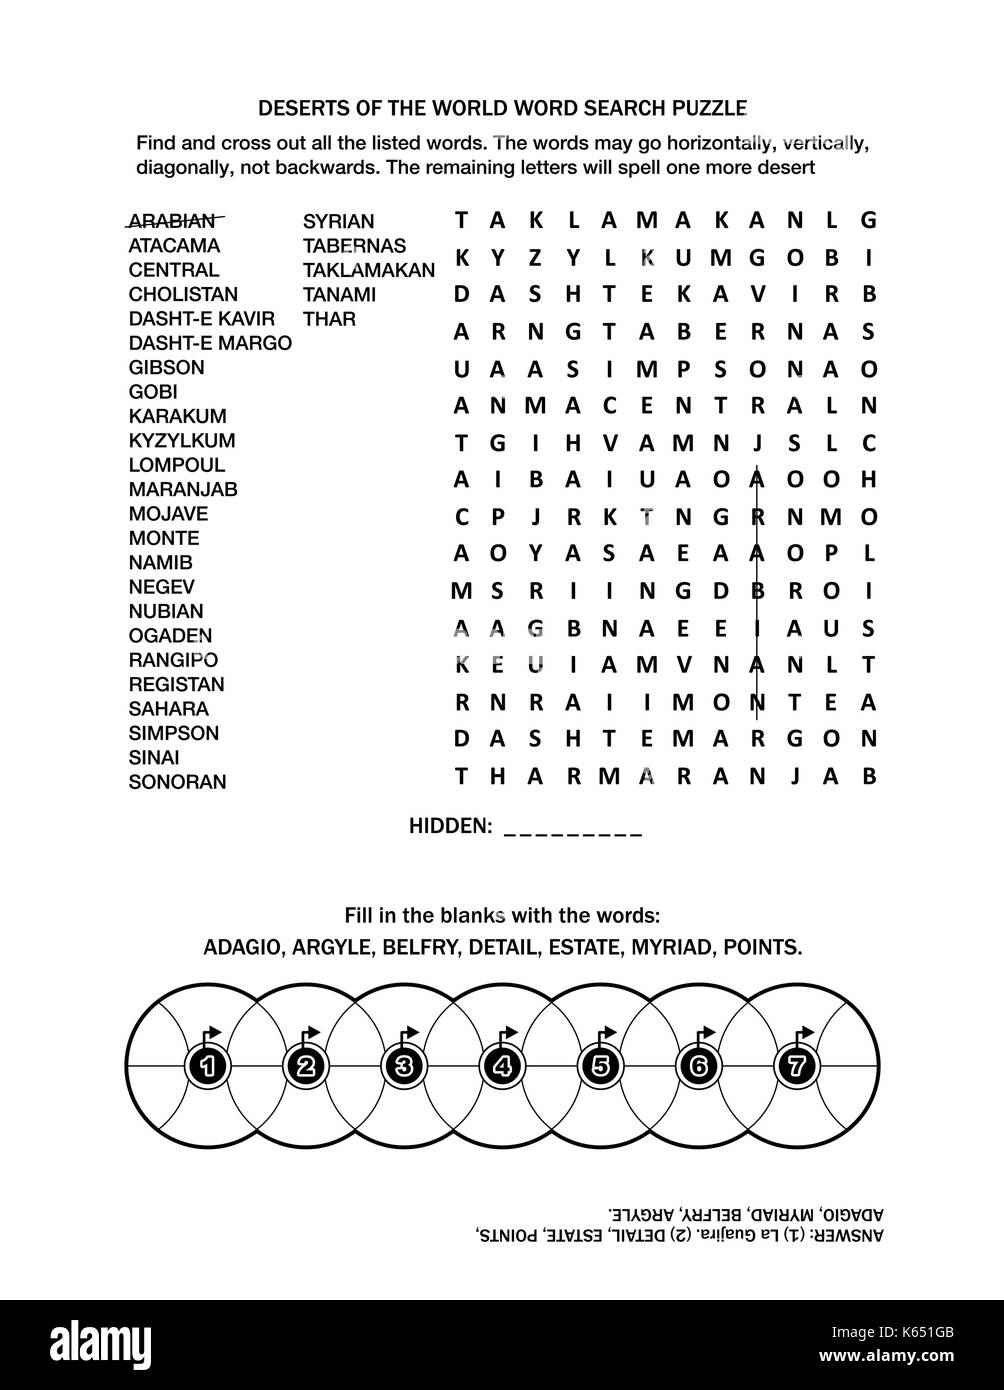 Pagina di puzzle con due giochi di parole (lingua inglese). deserti del  mondo puzzle di ricerca di parola e riempire le ruote. in bianco e nero, a4  o formato letter Immagine e